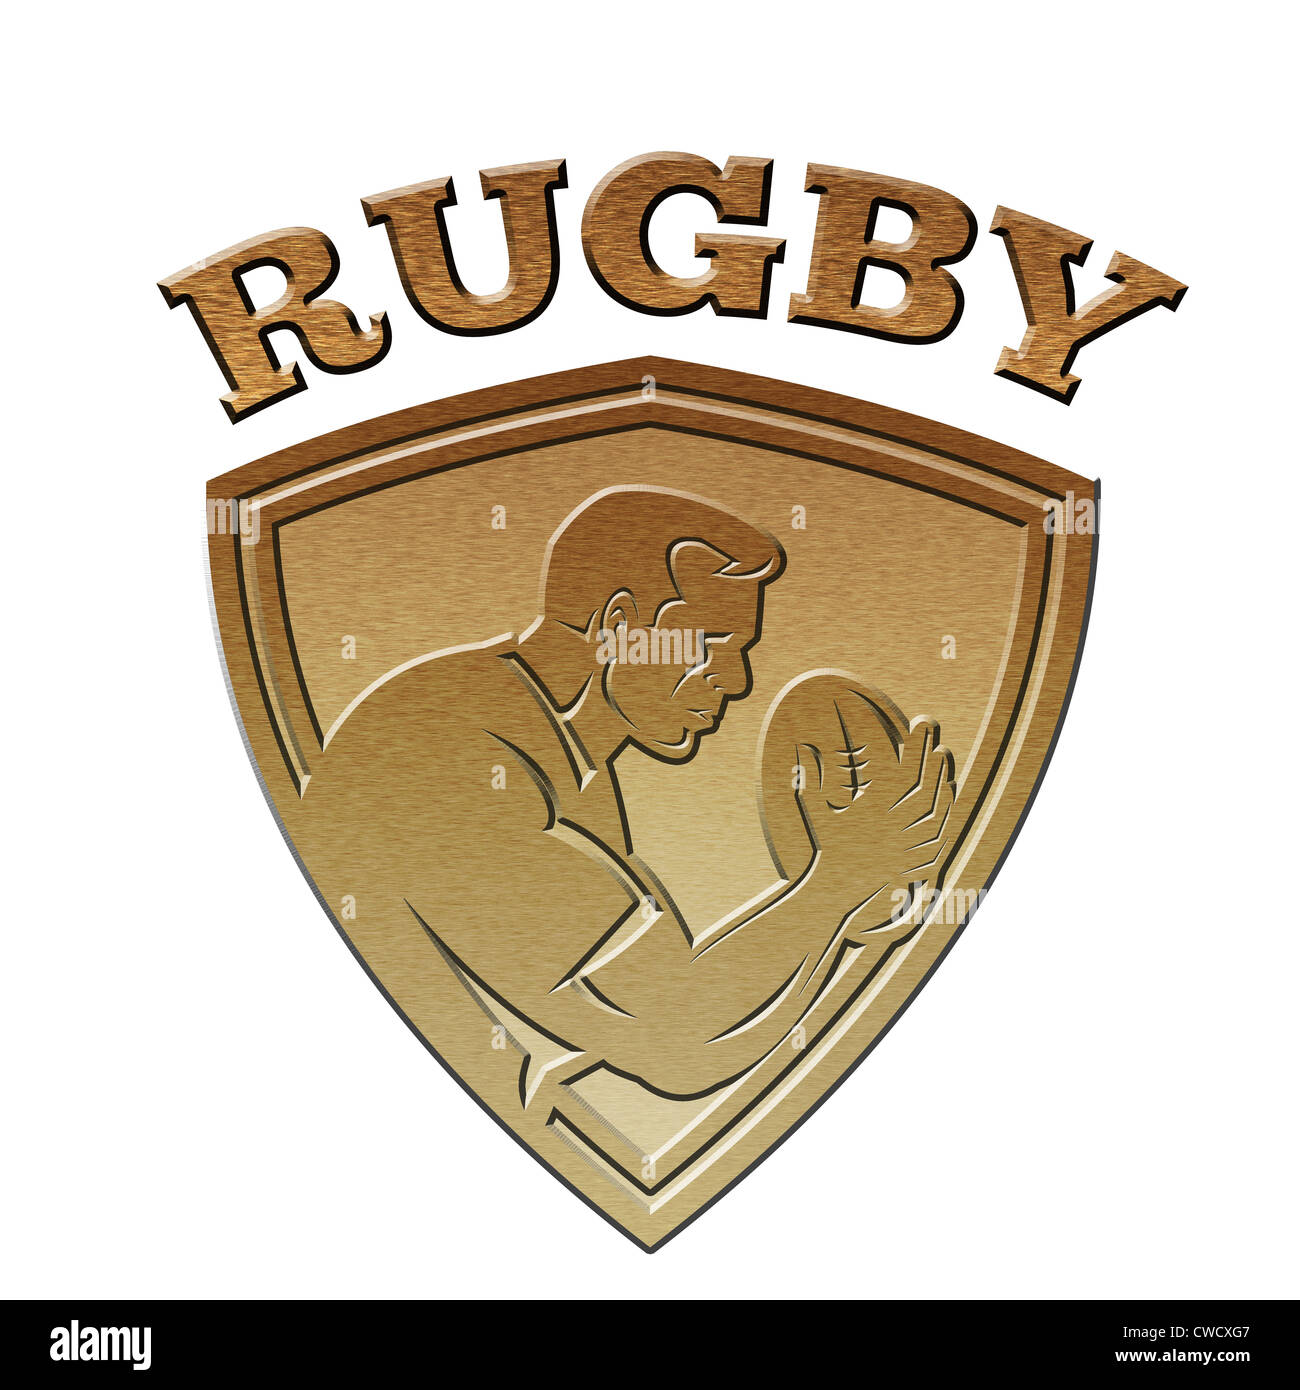 Ilustración De Un Jugador De Rugby Ejecuta Pasando El Balón En El Fondo Aislada Realizada En Oro 0333